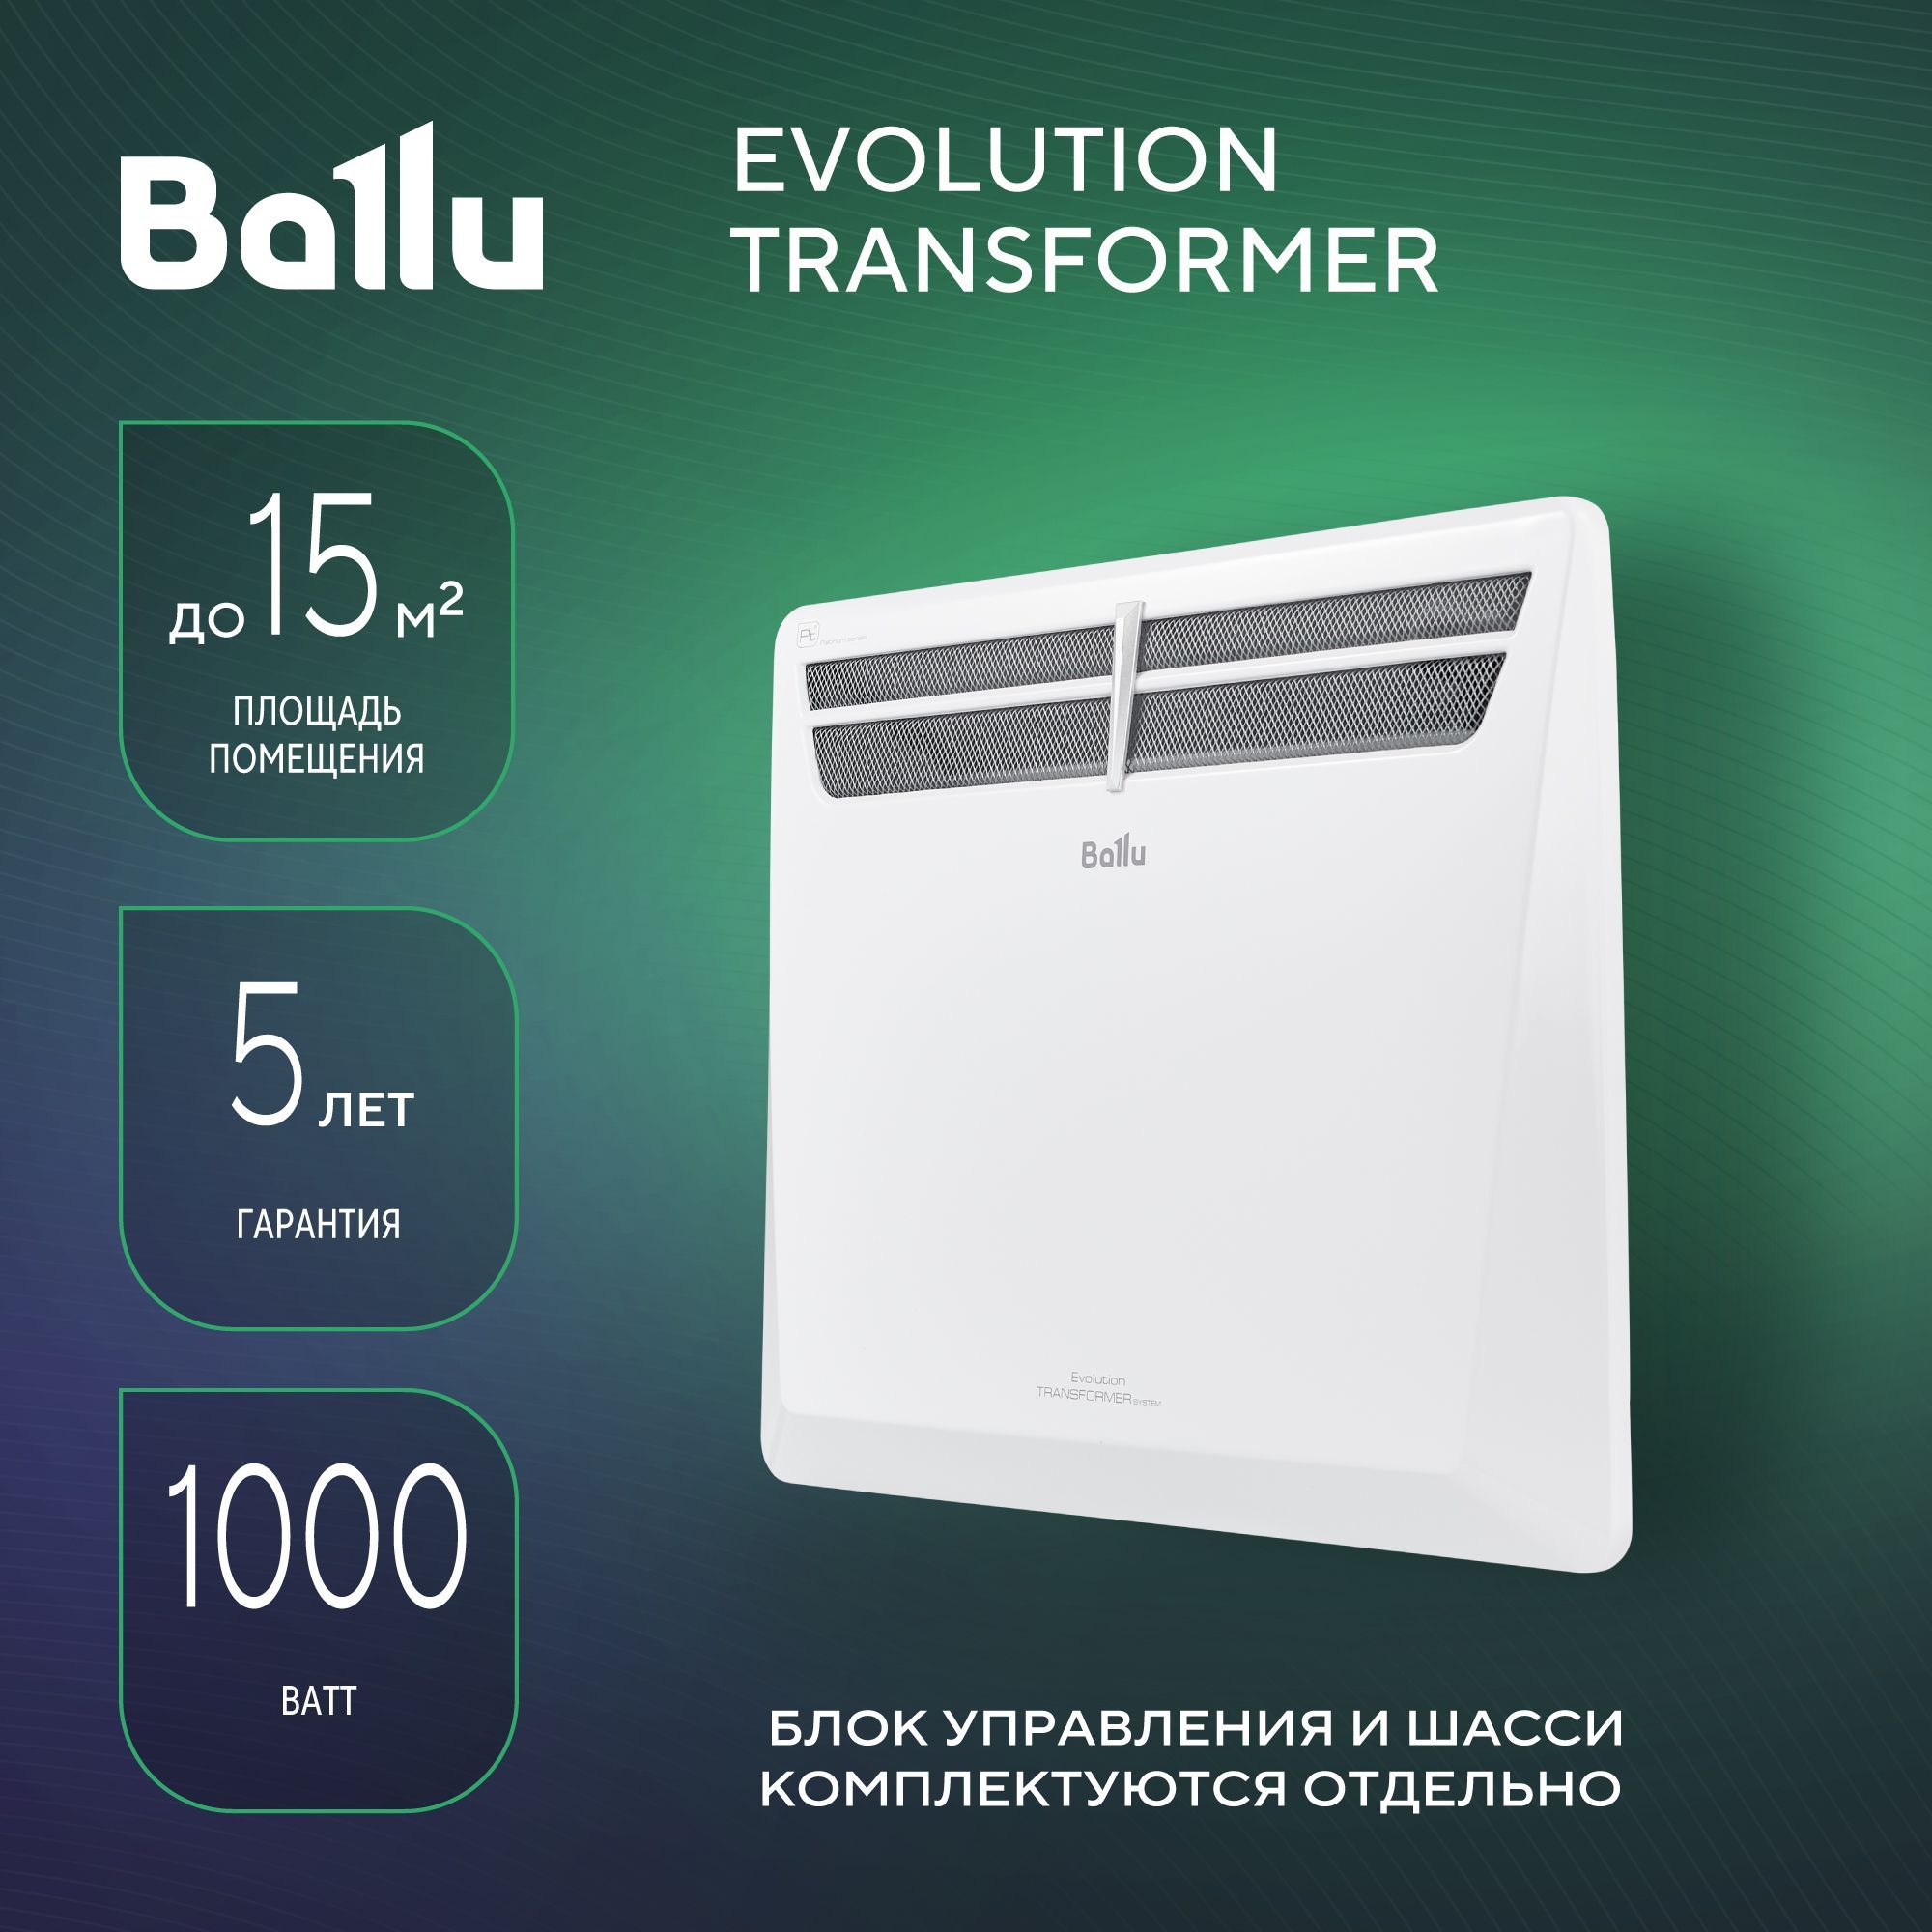 Конвекторы ballu evolution transformer. Модуль отопительный электрического конвектора Ballu Evolution Transformer BEC/EVU-1000. Конвектор Ballu 1000. ТЭН для конвектора Ballu 1000w. ТЭН для конвектора Ballu 1000вт.